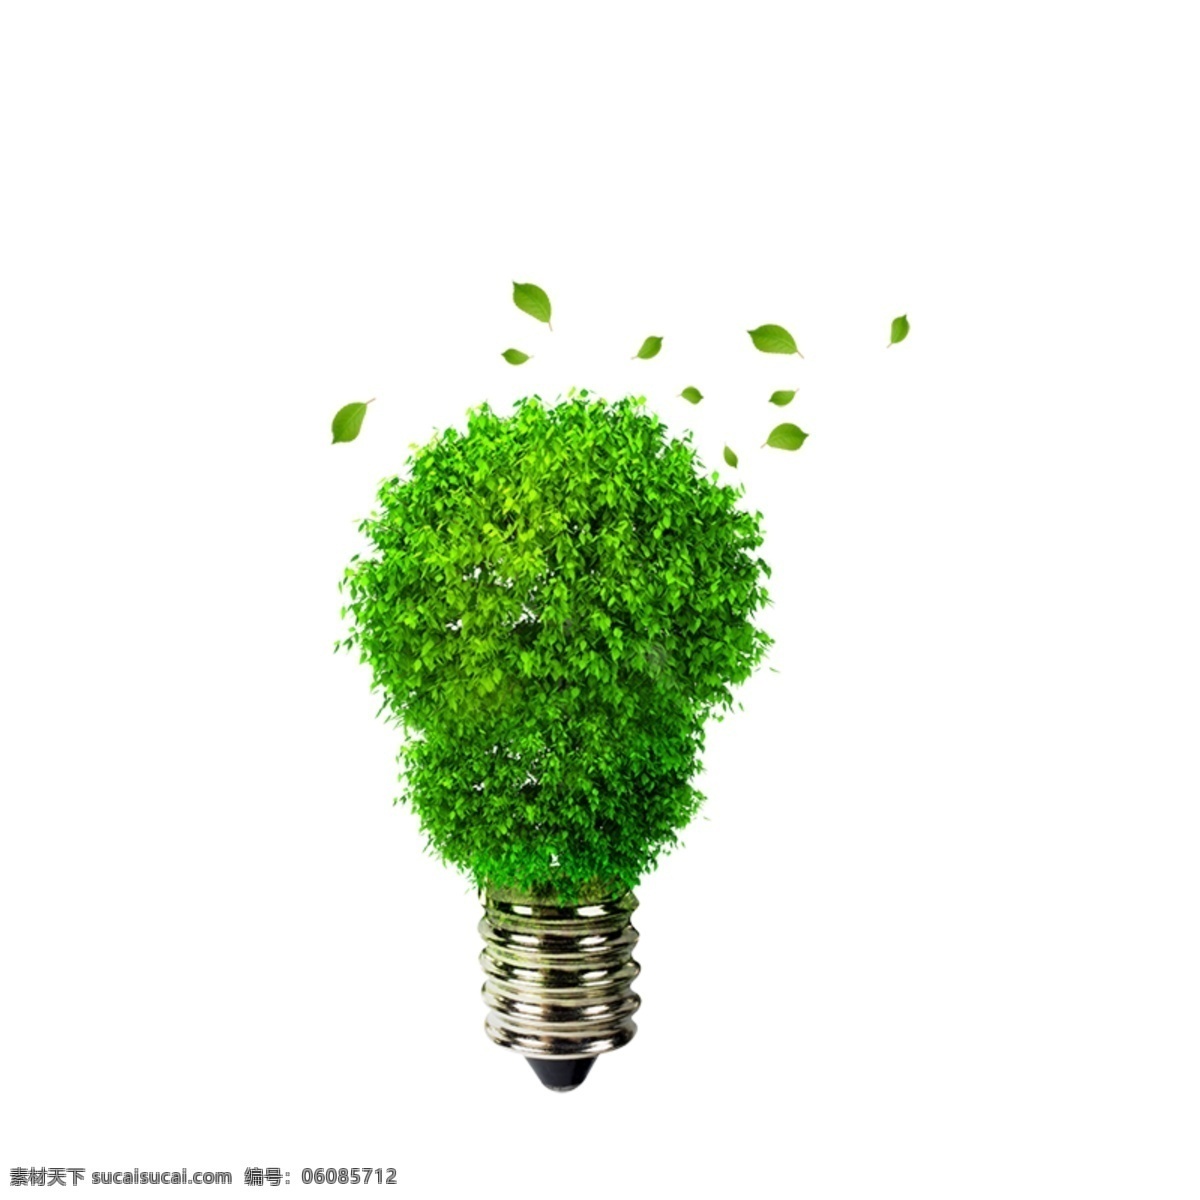 商务元素 保护环境 绿色 树叶 灯泡 创意素材 白色